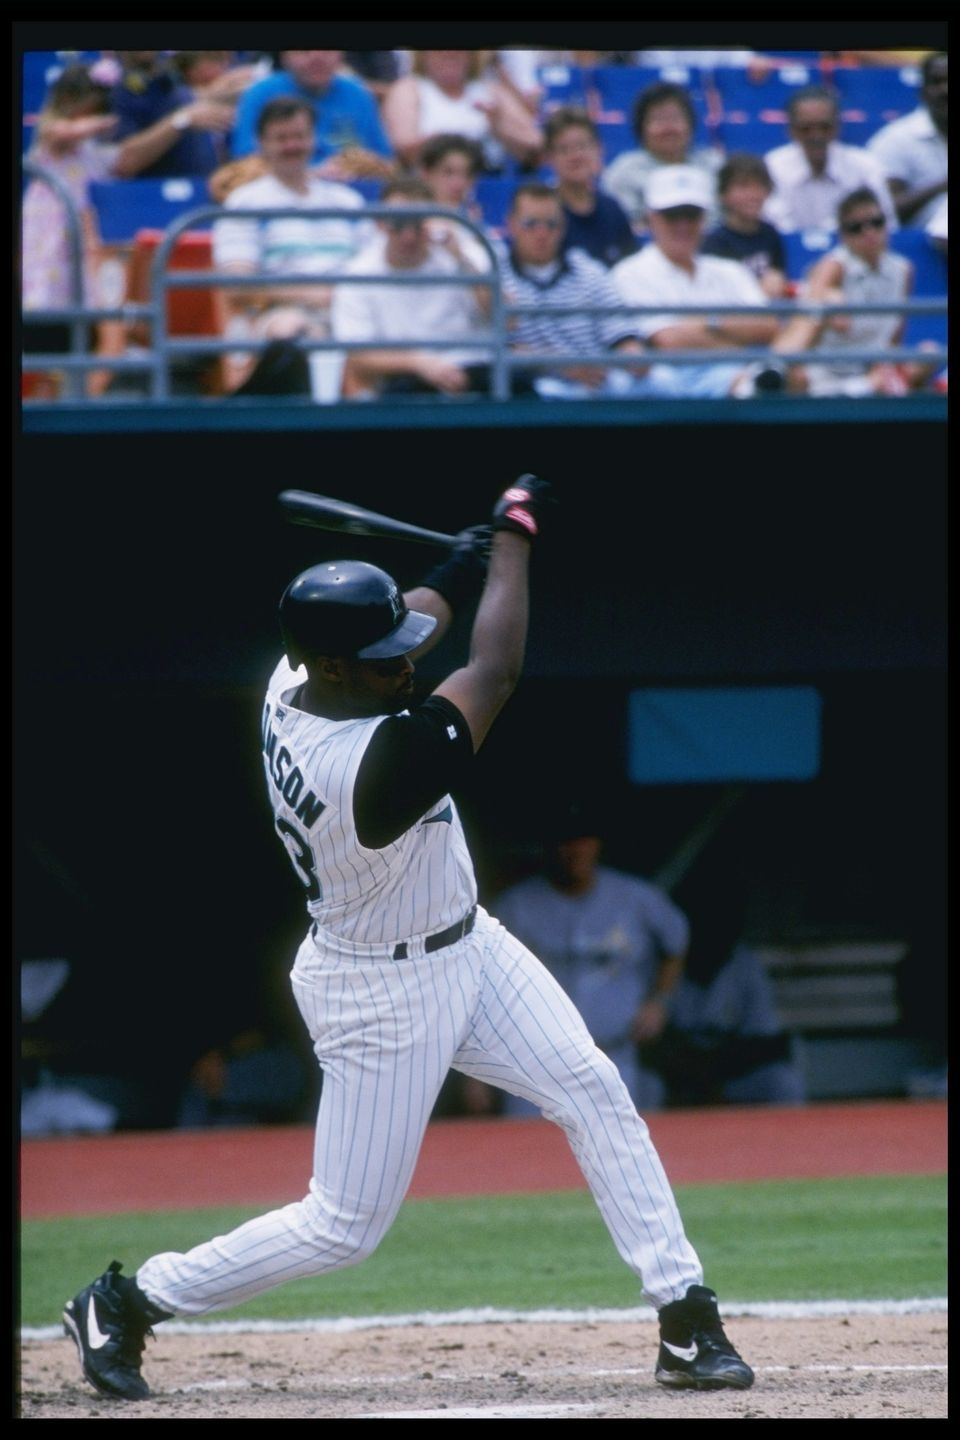 1997 - 1 inning